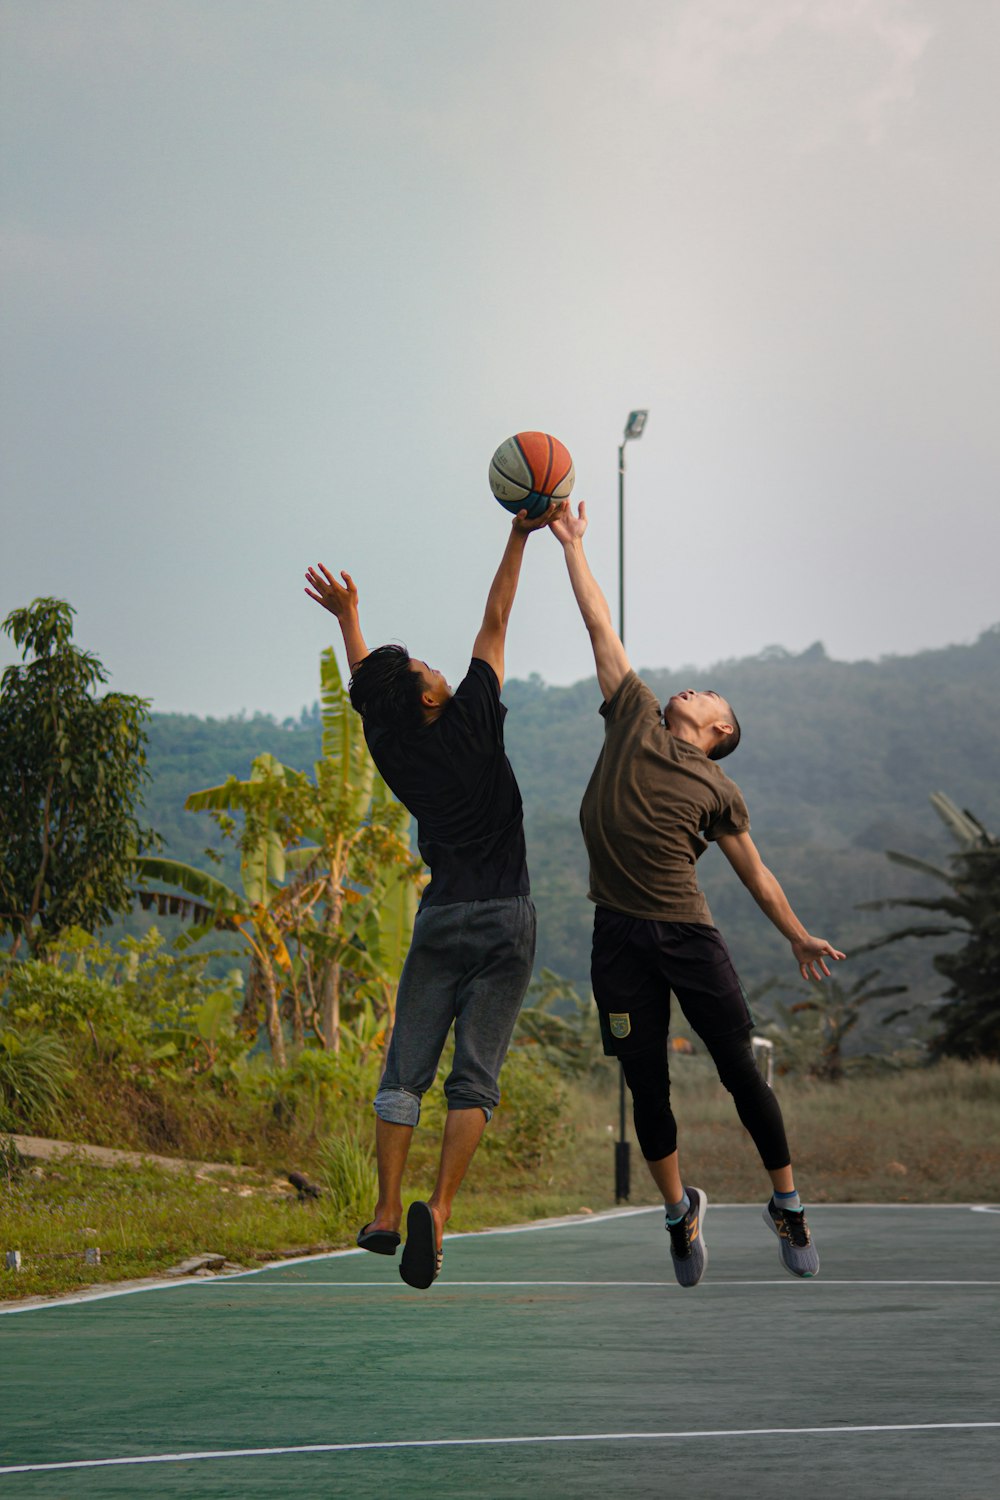 Dos jóvenes jugando baloncesto en una cancha de baloncesto